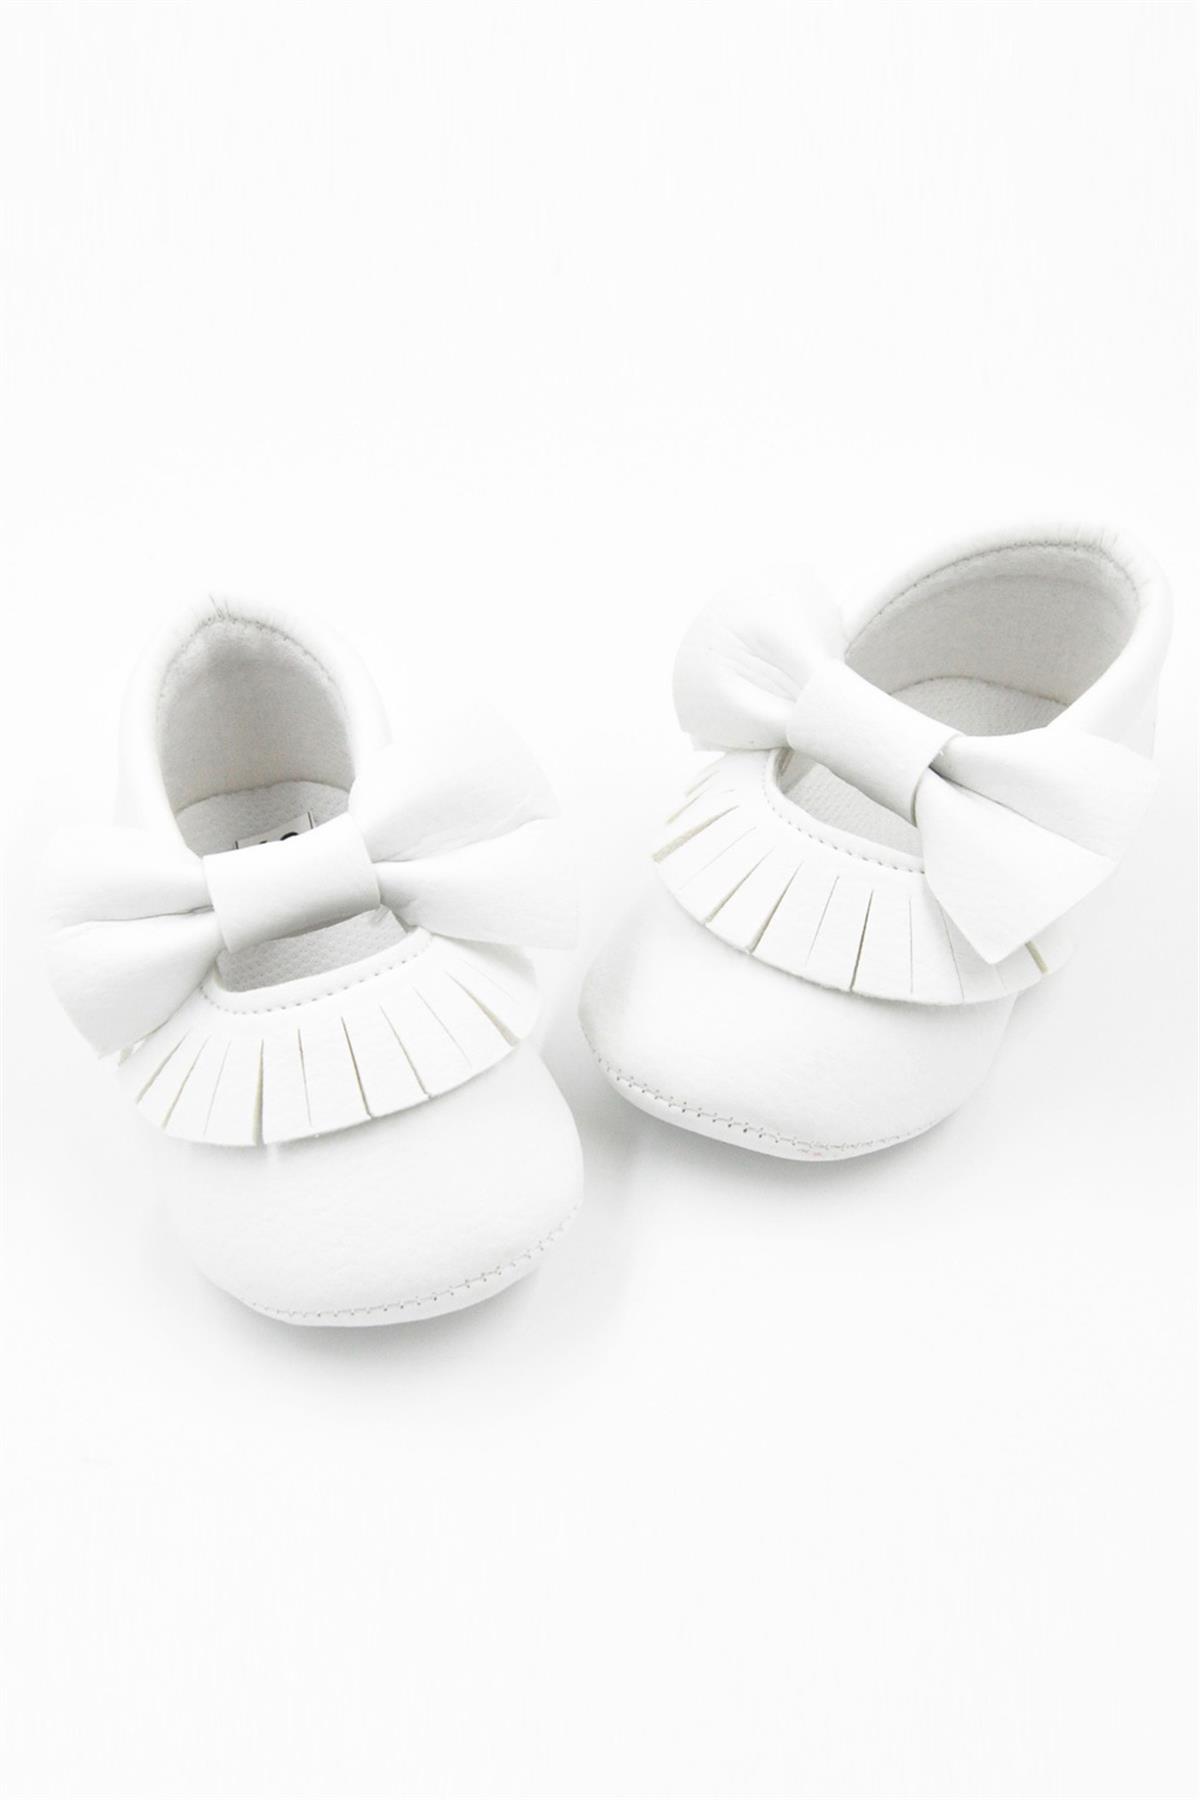 Beyaz Fiyonk Püsküllü Bebek AyakkabıLM130 | Le Mabelle